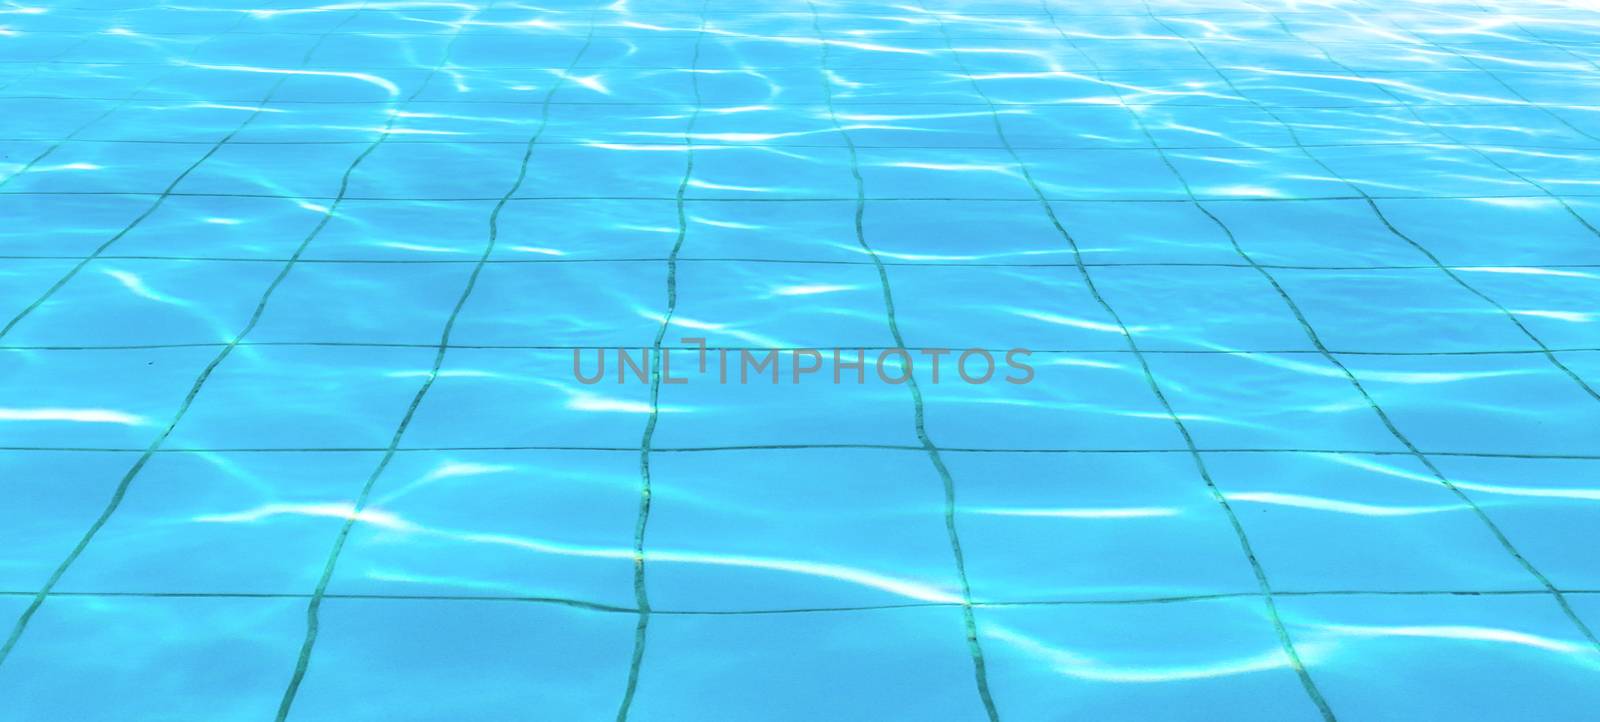 Pool floor by germanopoli